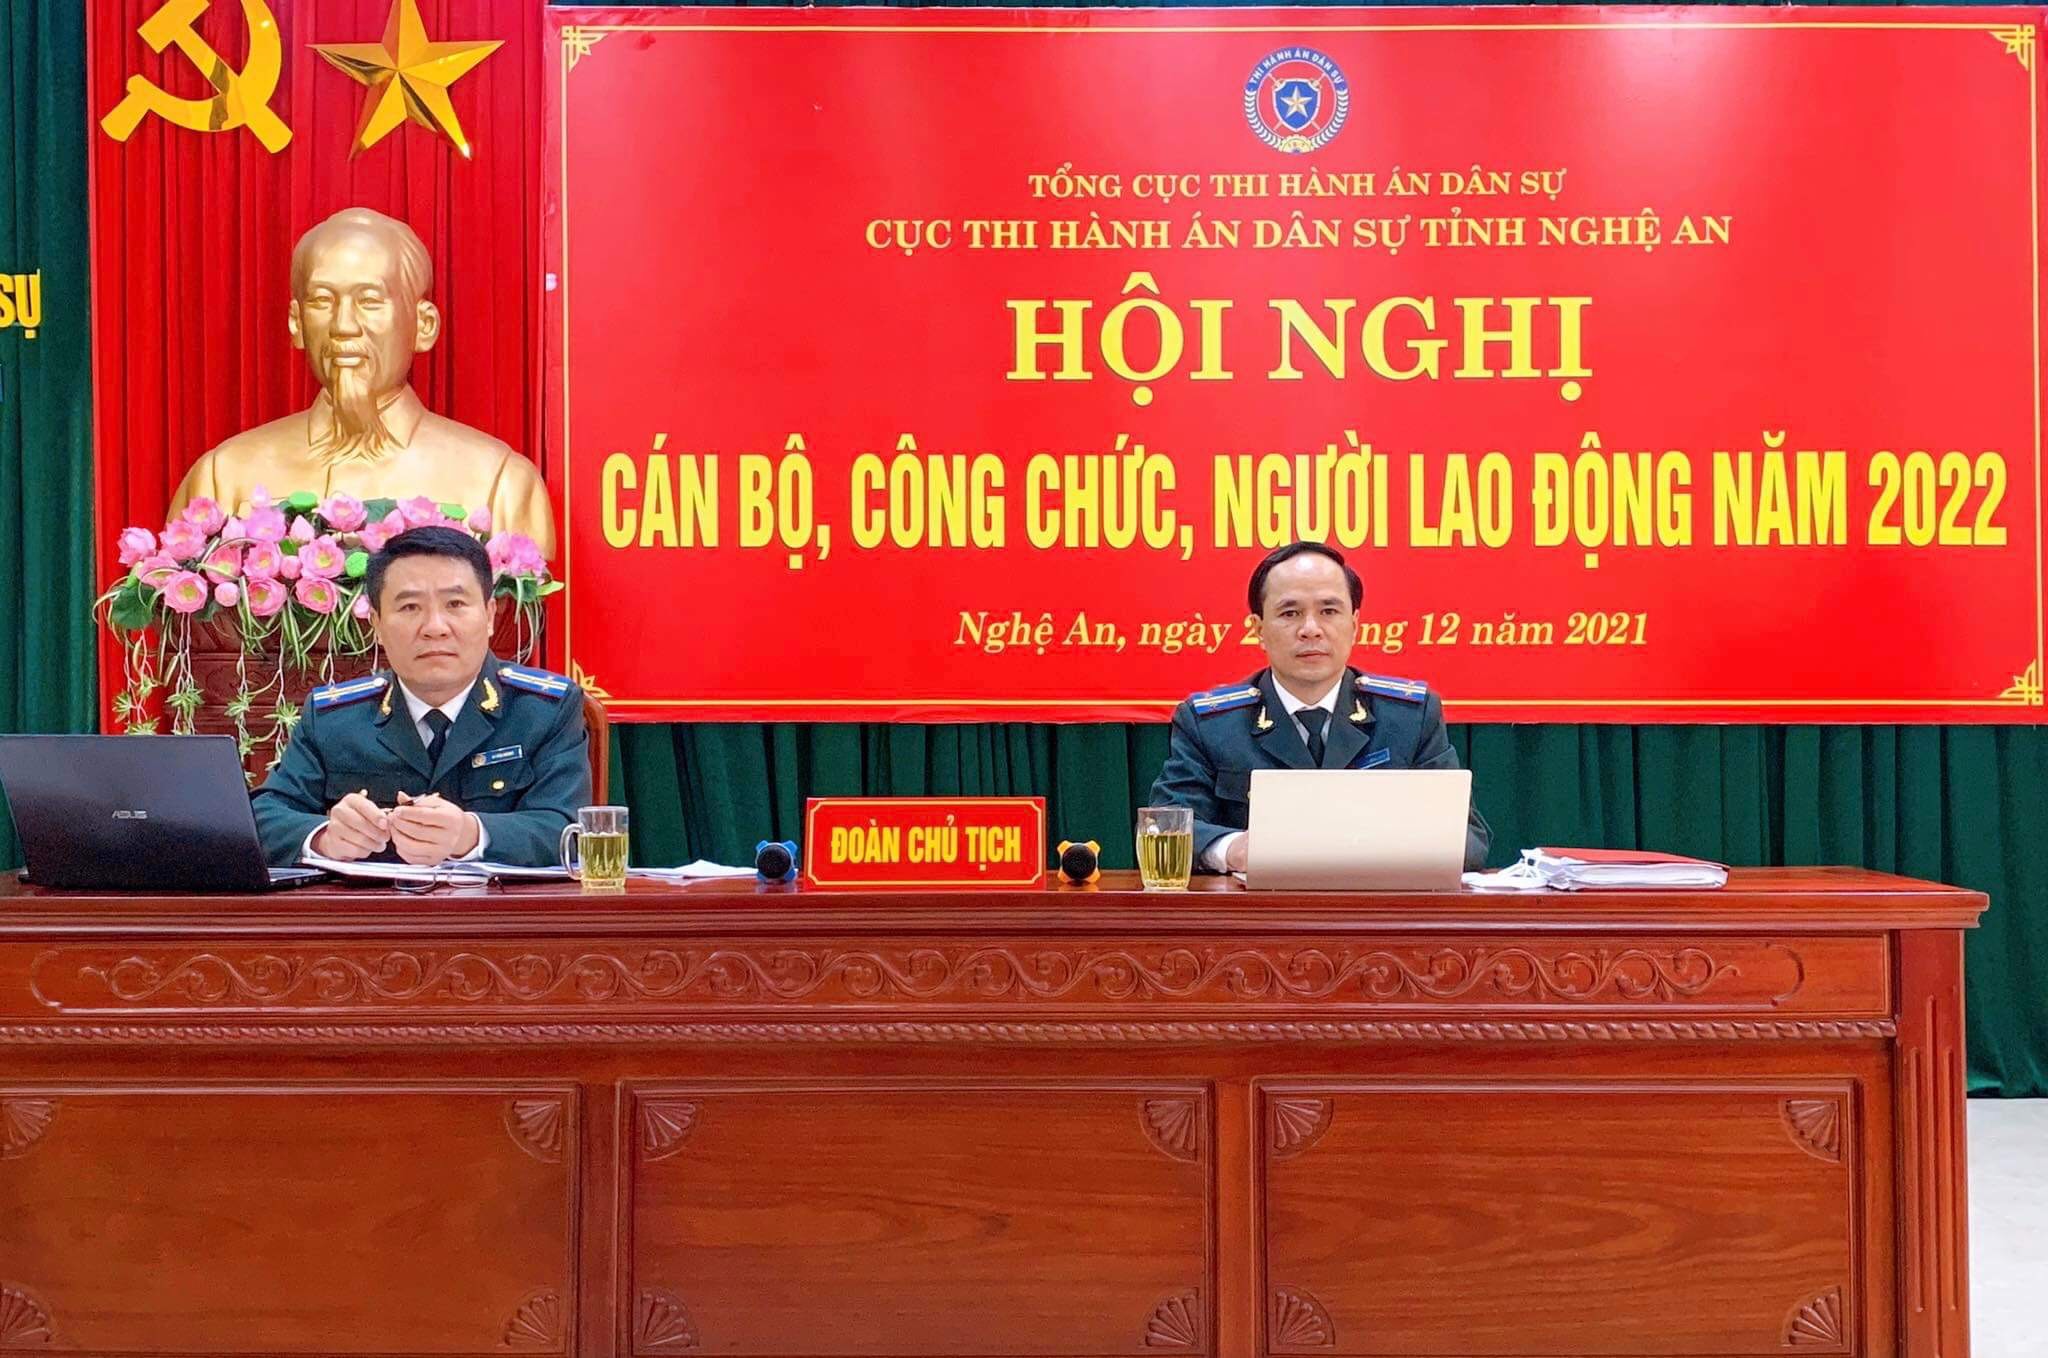 Cục Thi hành án dân sự tỉnh Nghệ An tổ chức Hội nghị cán bộ, công chức, người lao động năm 2022.